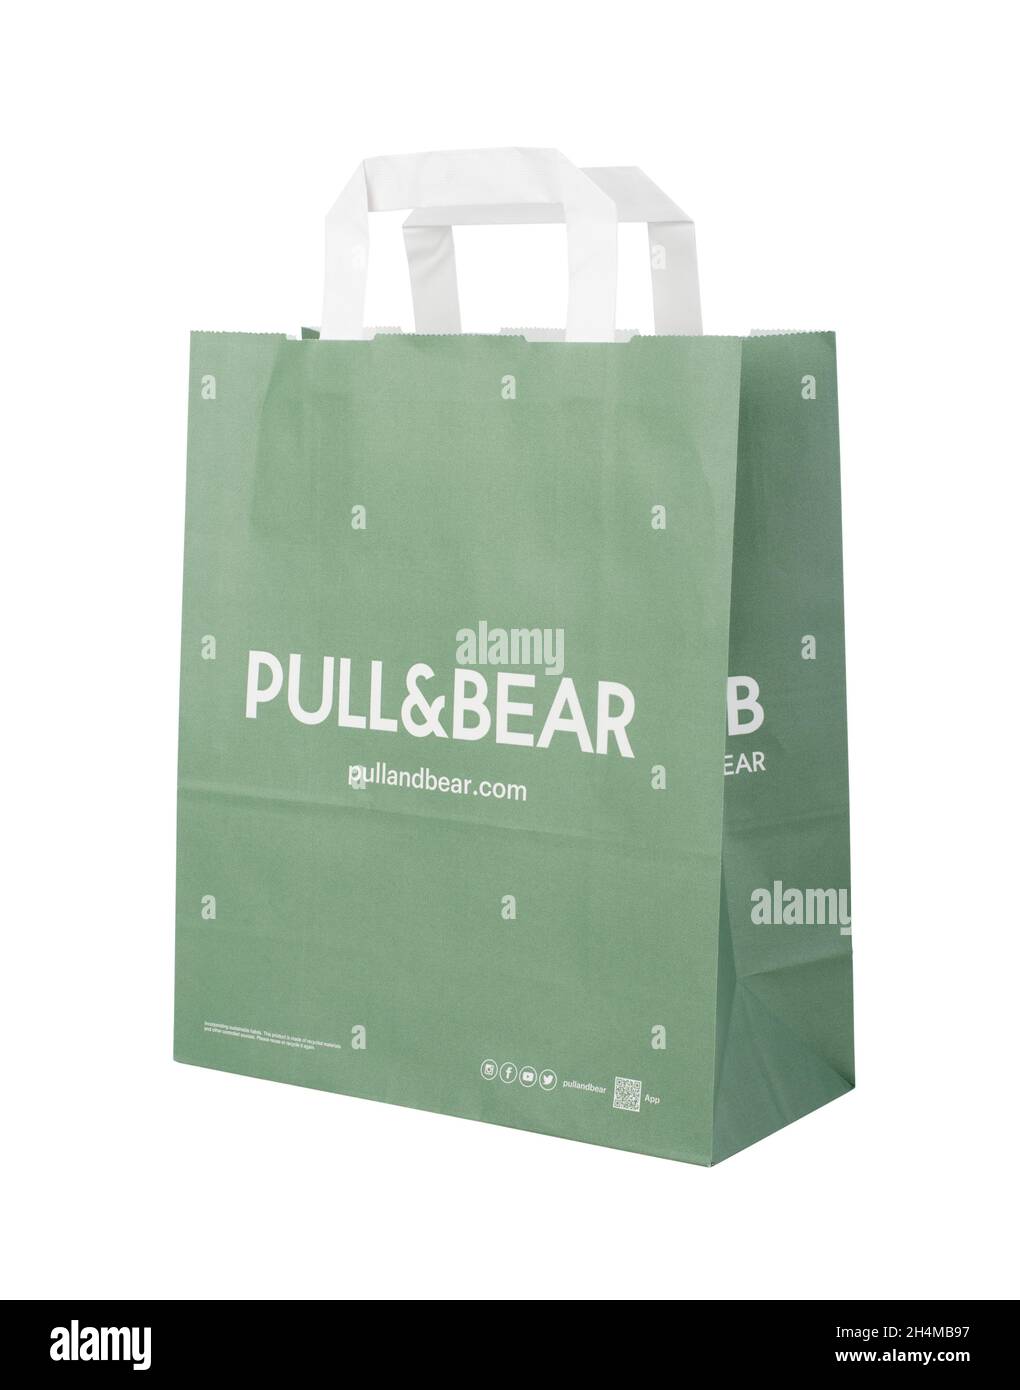 SAMARA, RUSIA - Septiembre 13 2021: Bolsa de papel verde Pull & Bear con el logo del minorista español de ropa y accesorios. Aislado en blanco Foto de stock